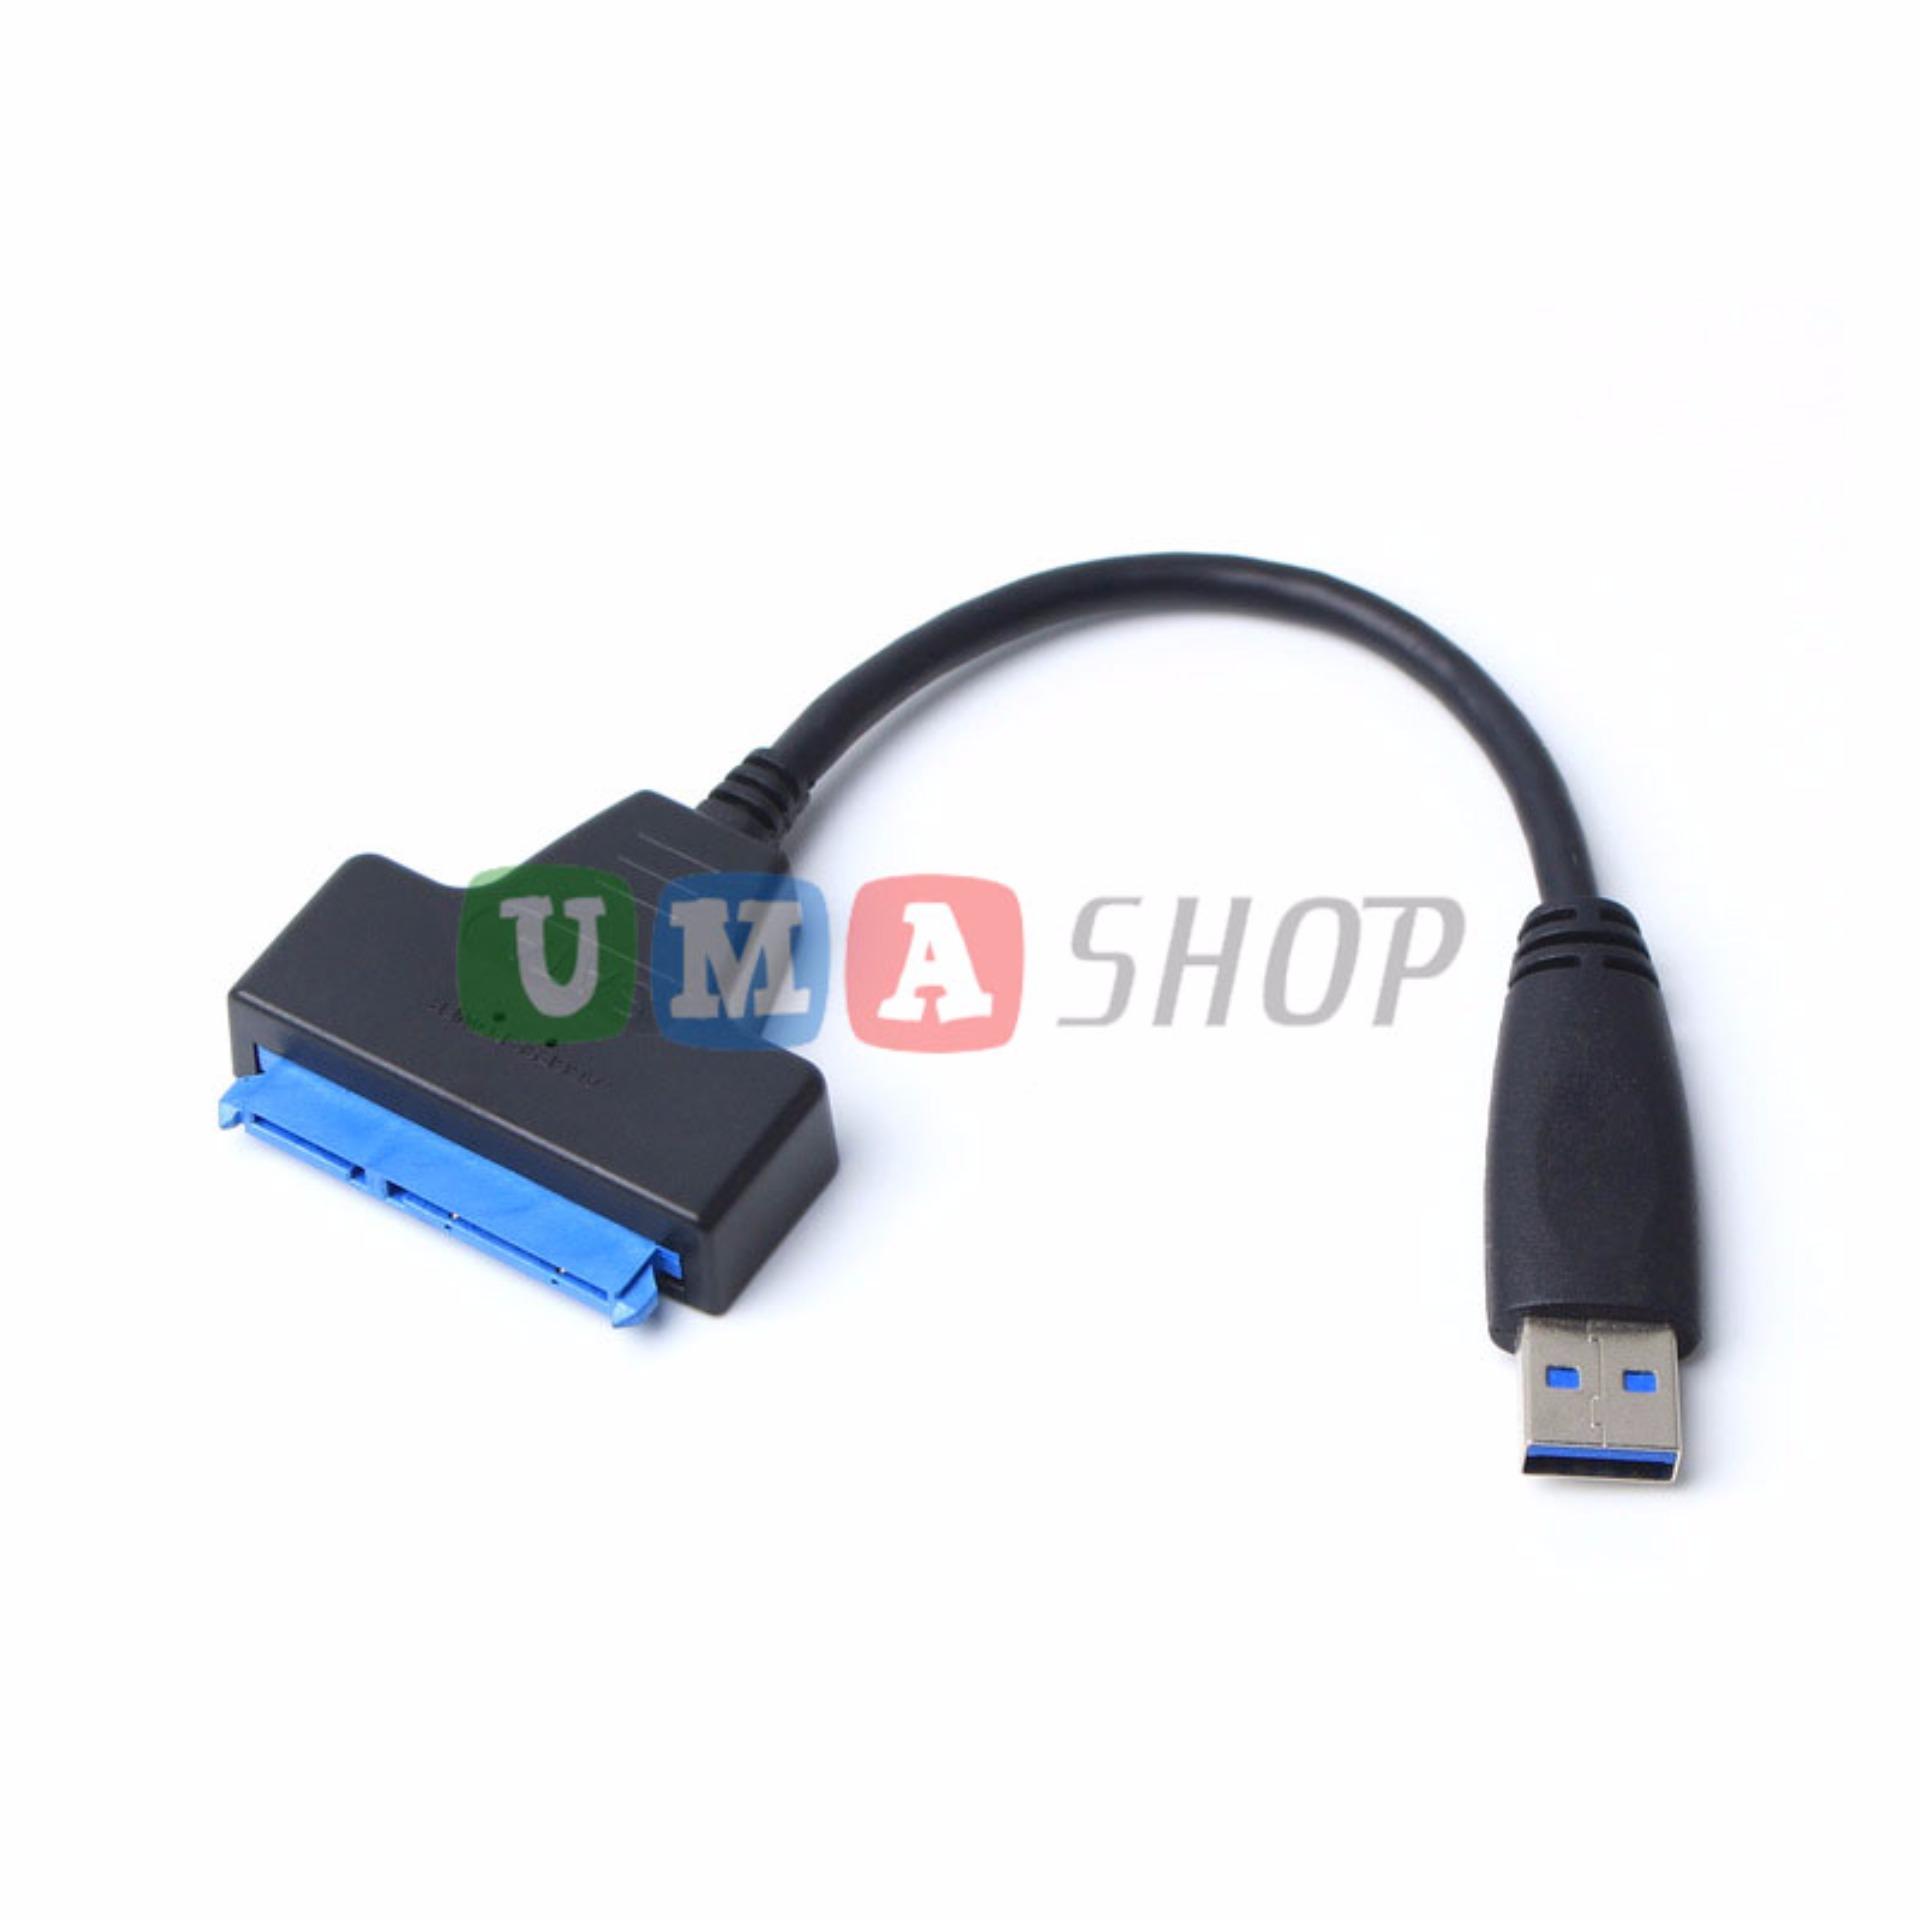 Cáp chuyển USB 3.0 sang SATA 3.0 cho ổ cứng SSD (20cm)